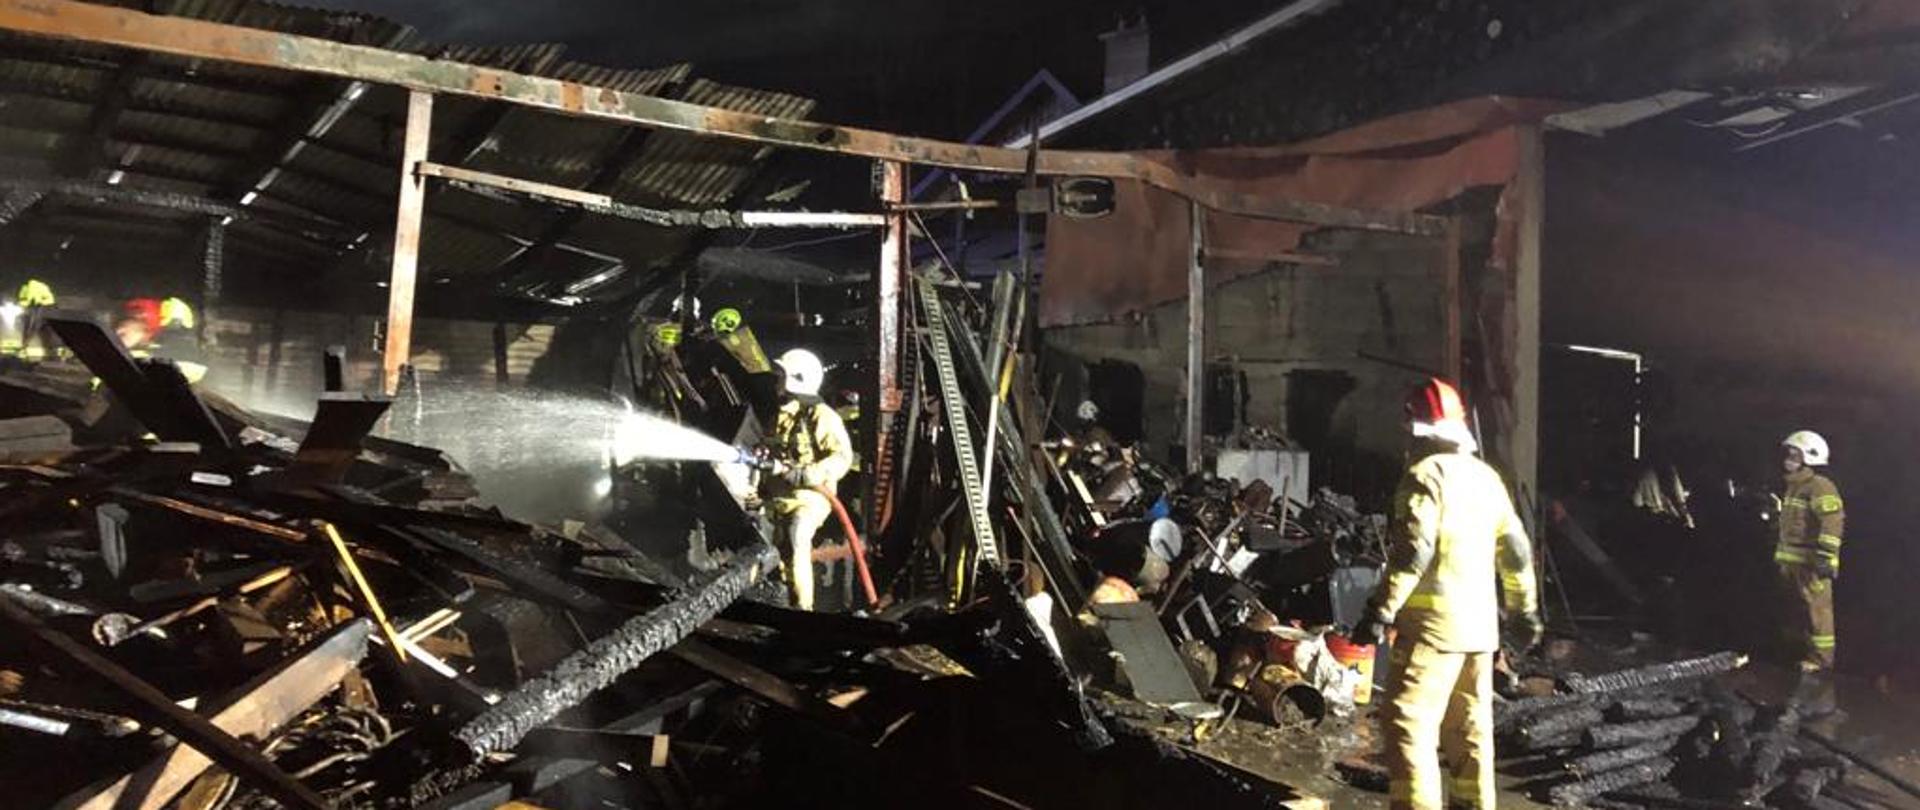 Zdjęcie przedstawia pogorzelisko po pożarze budynku gospodarczego. Wśród zgliszcz przemieszczają się ratownicy demontując spalone elementy konstrukcji.